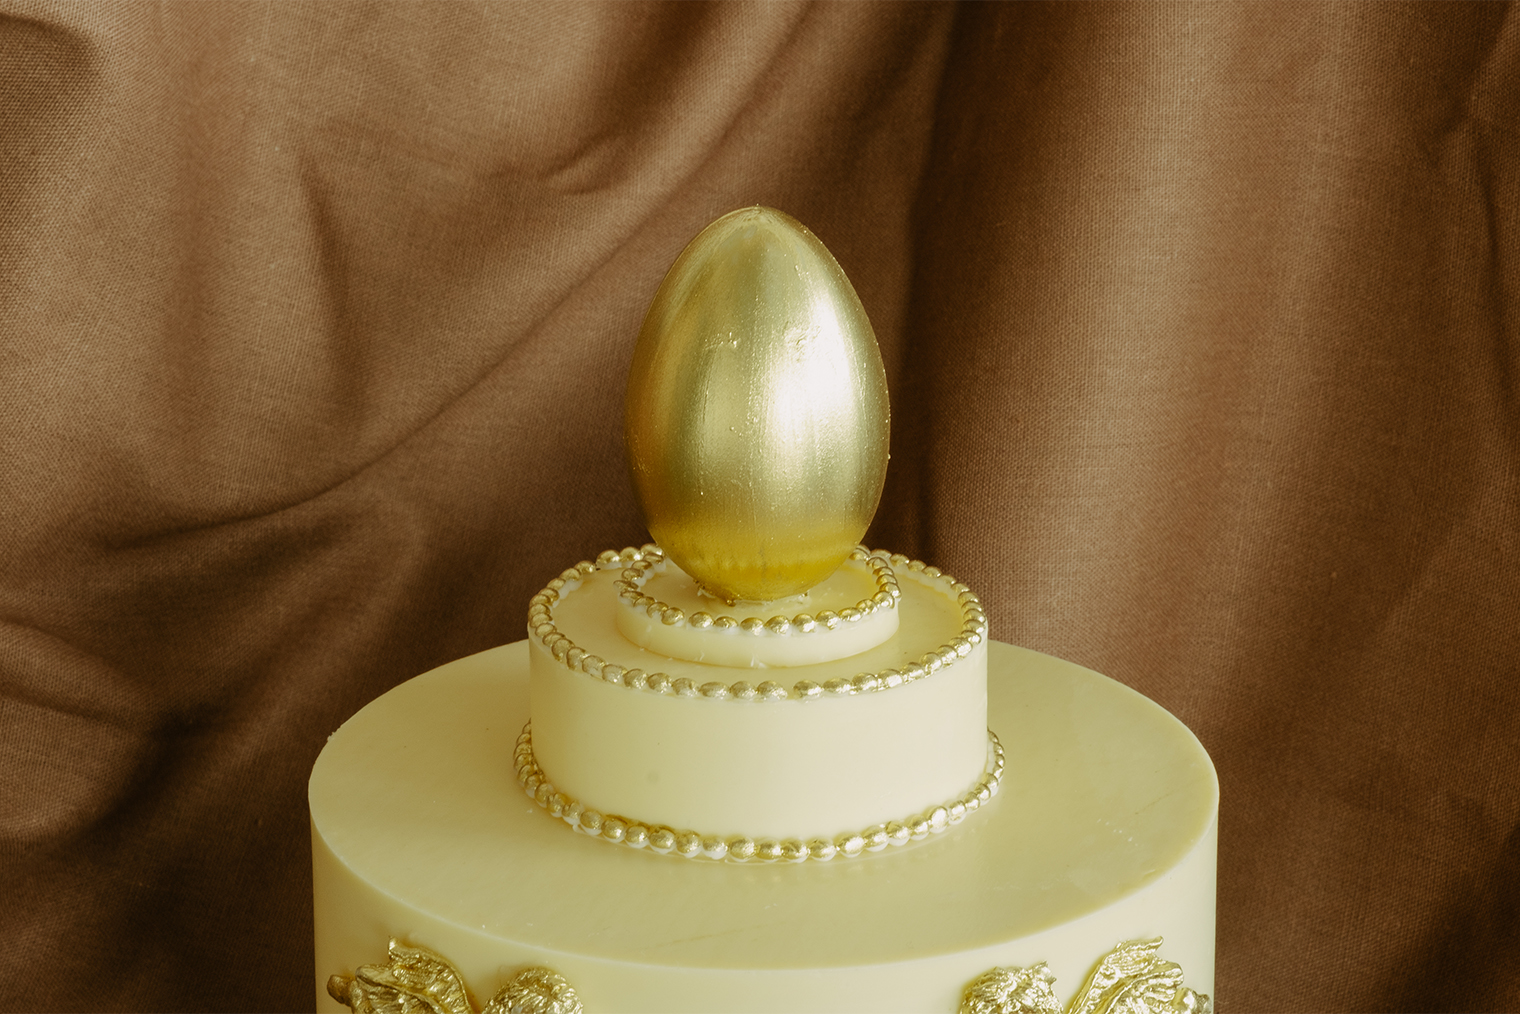 Шоколадное яйцо на верхушке, скорее всего, покрыто кандурином — пищевым красителем с перламутровым блеском